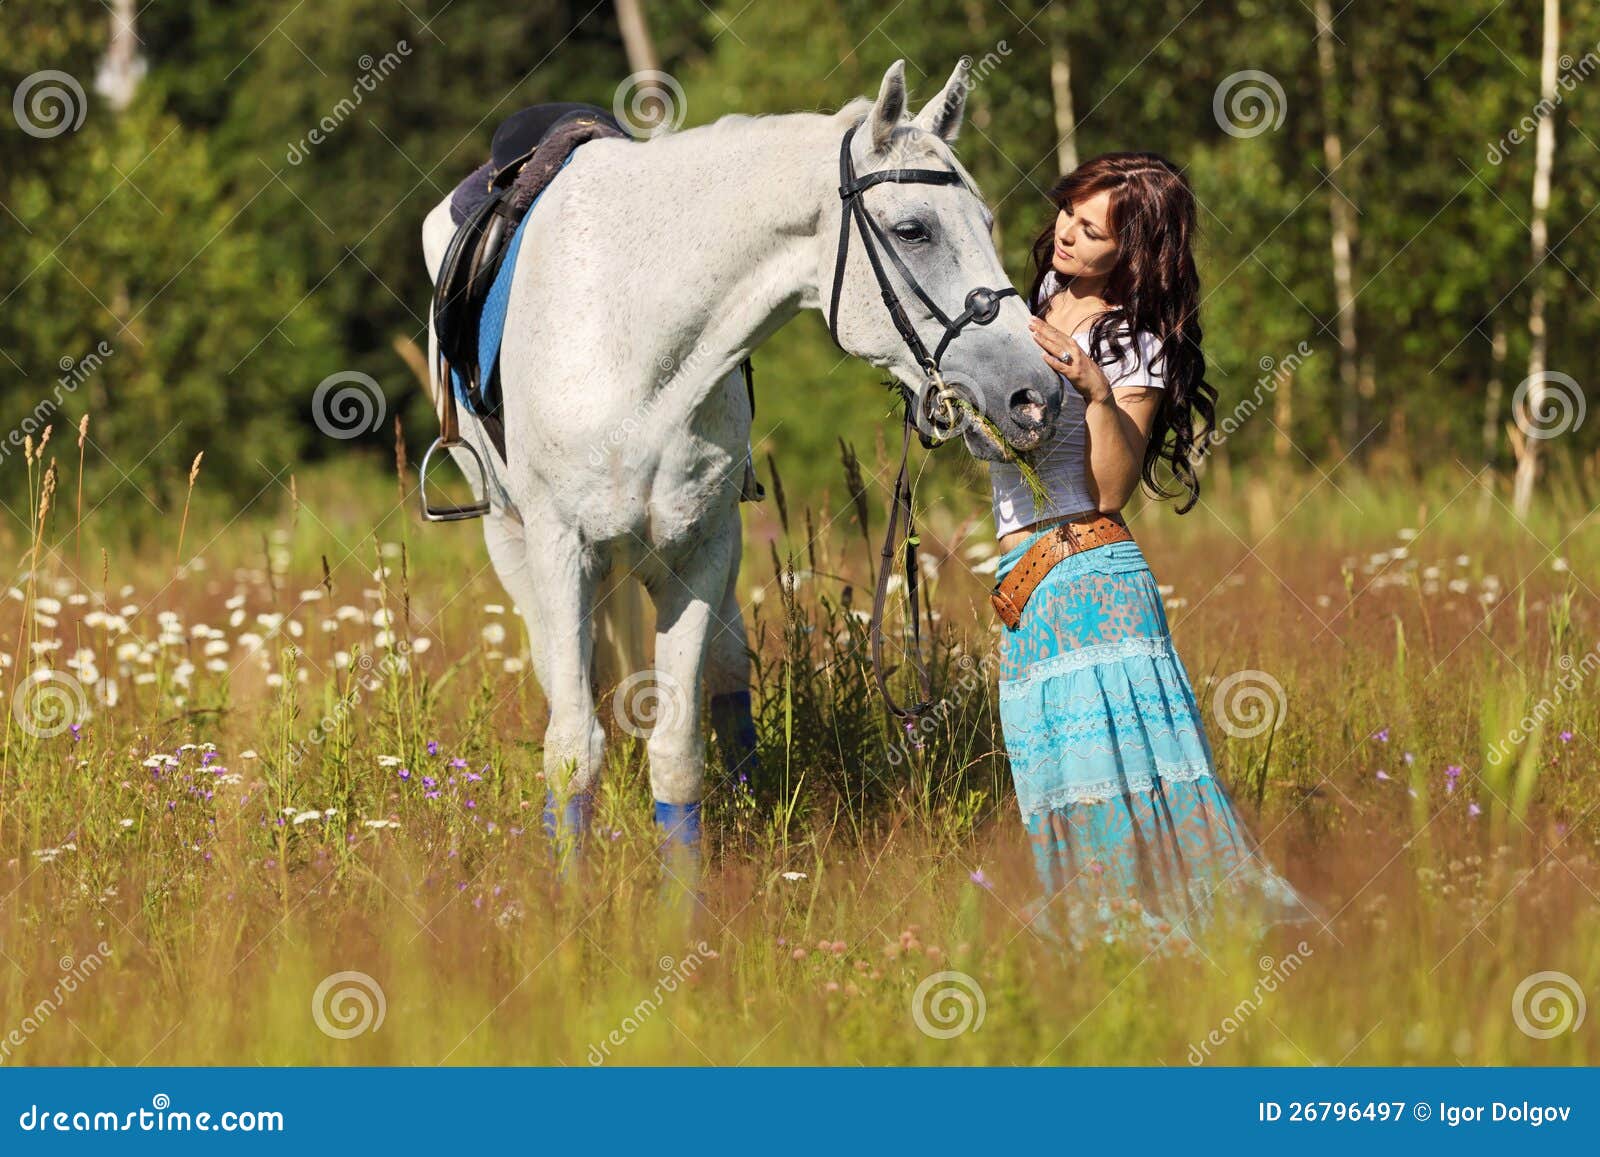 Κορίτσι με το άλογο. Όμορφες στάσεις κοριτσιών στο άσπρο άλογο σε ένα θερινό λιβάδι